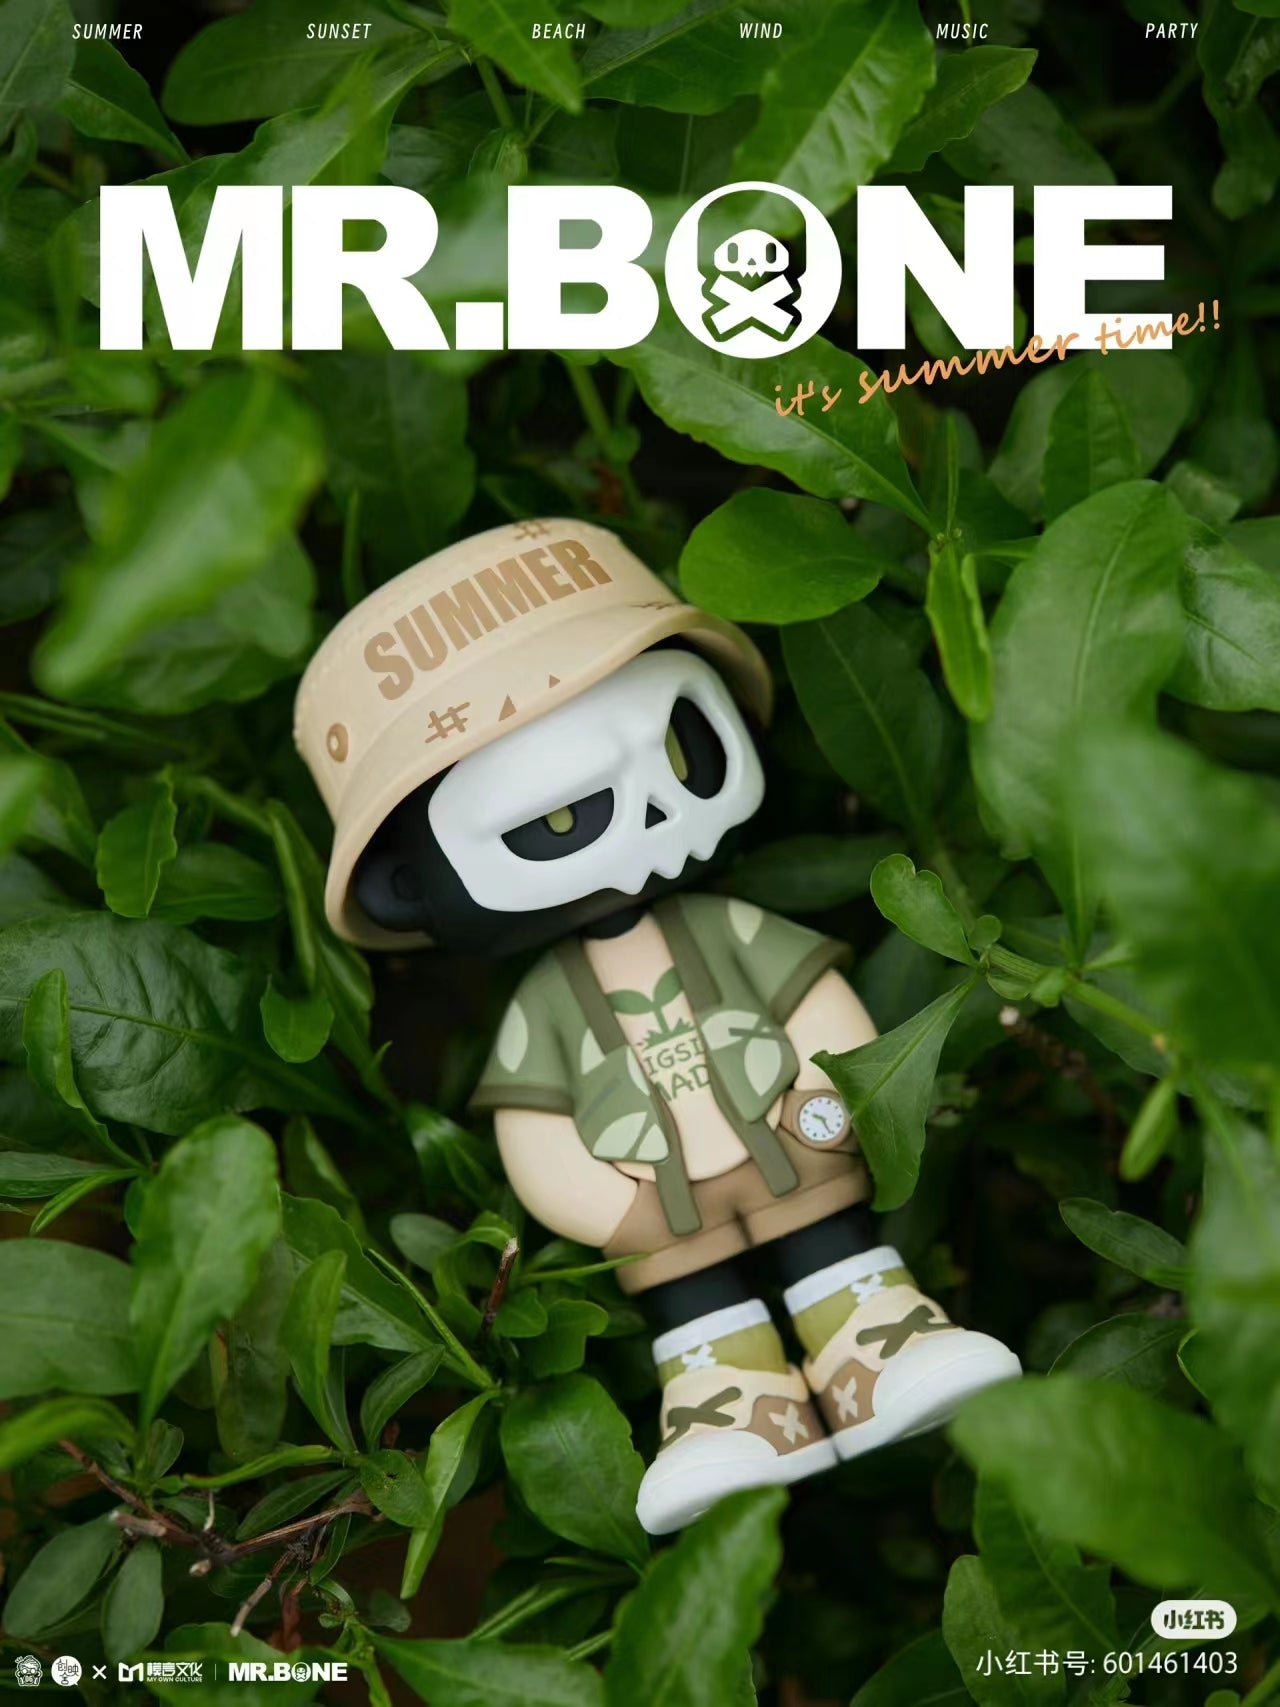 Mr Bone Summer Wind Through The Woods